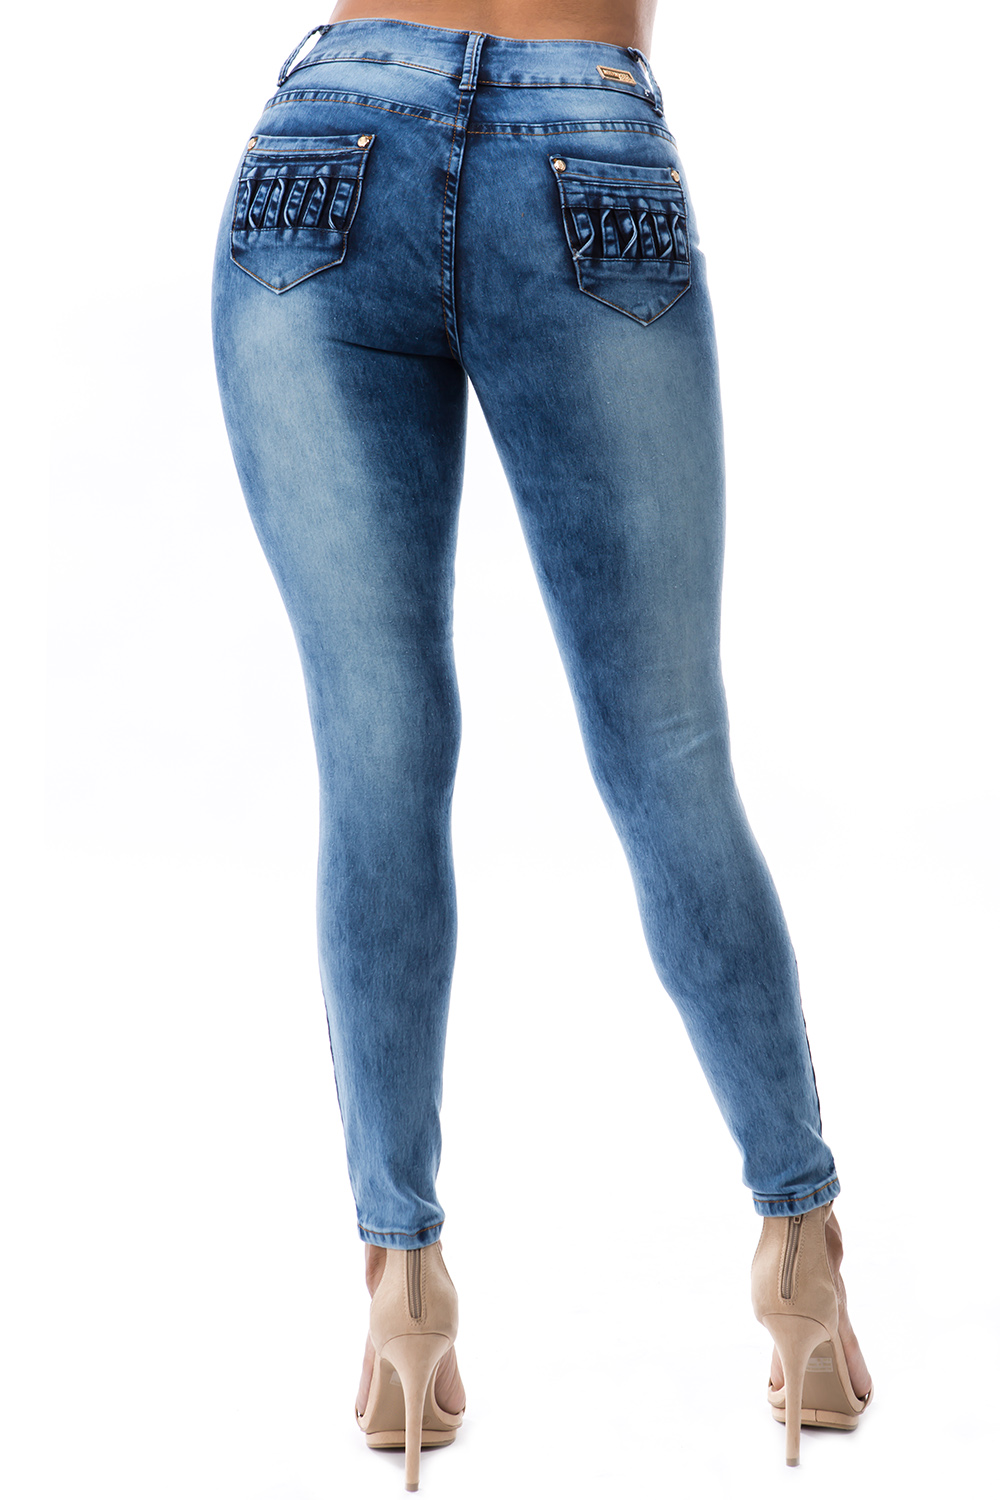 MM-SSP-Q1578_MEDIUM_BLUE – Diamante Jeans Online Store